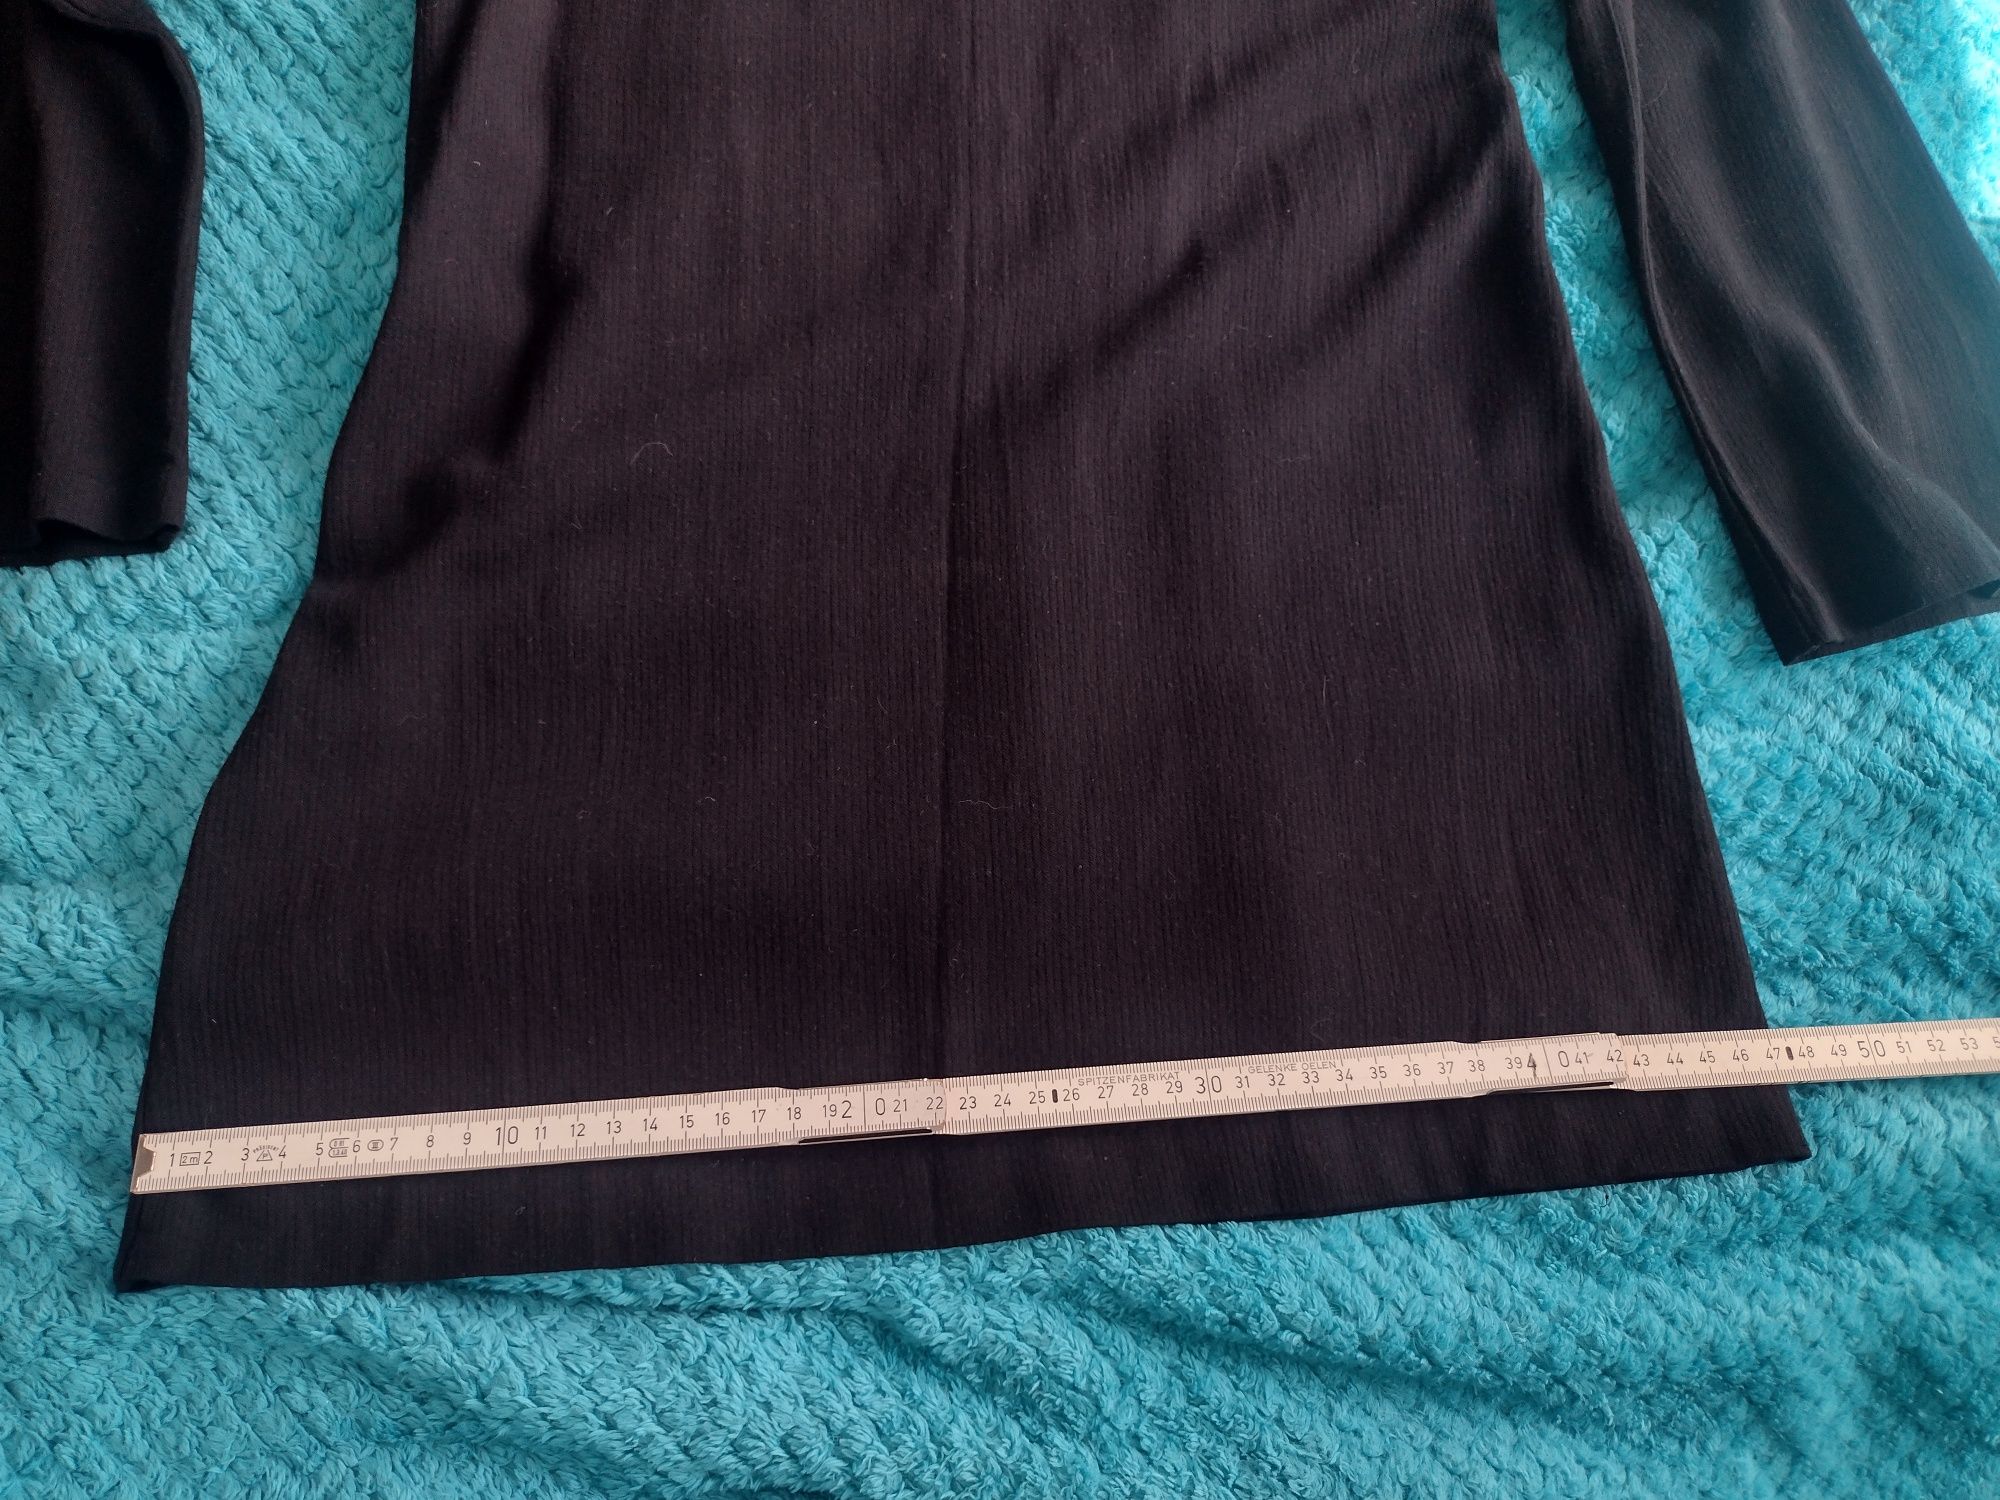 Czarna sukienka mini/czarna tunika firmy Benetton rozm. M